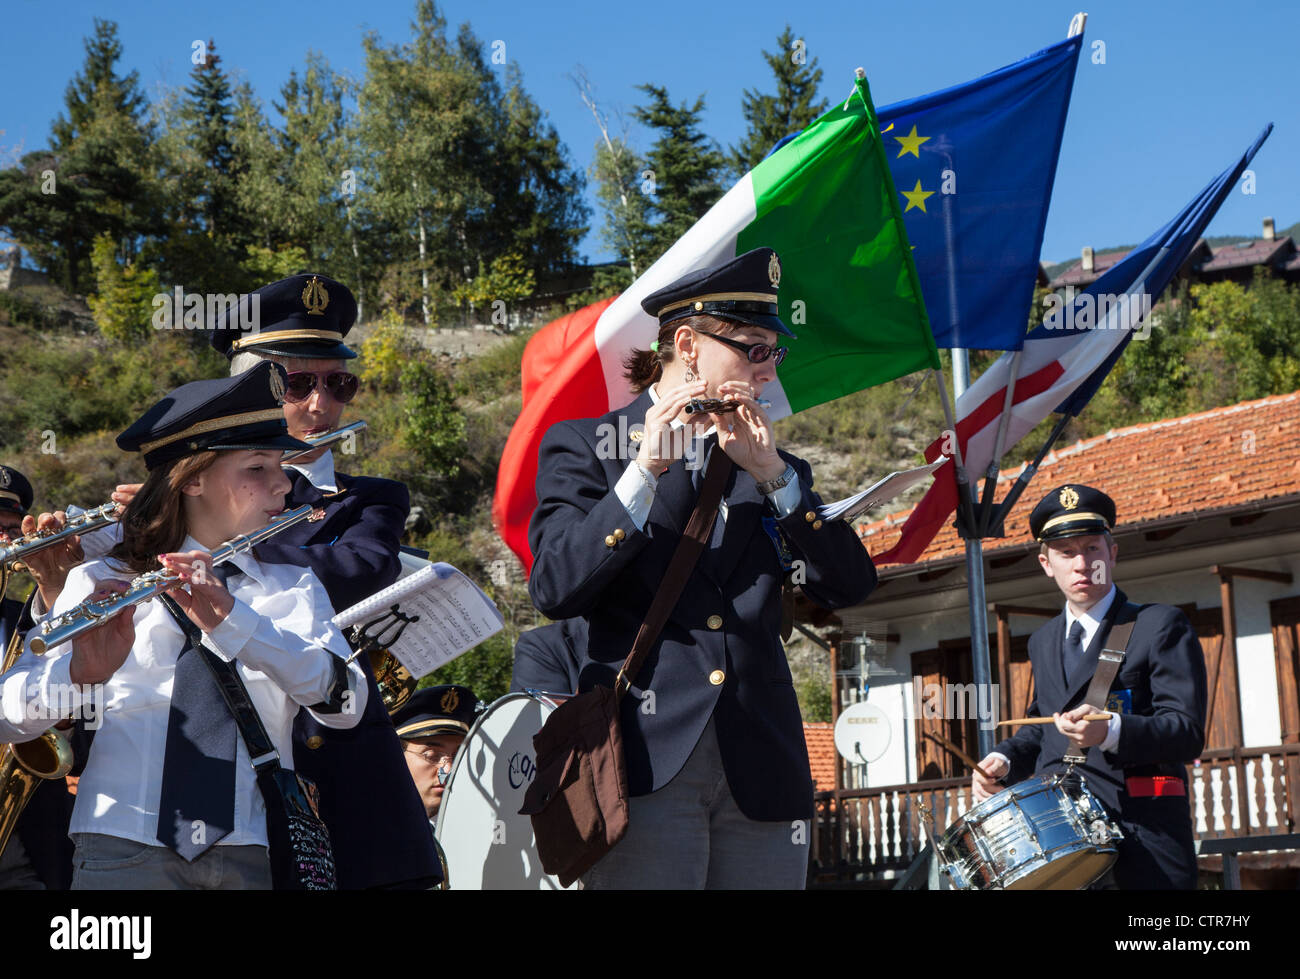 Ciudad italiana de banda tocando instrumentos musicales en un festival de Oulx, Piamonte, Italia Foto de stock